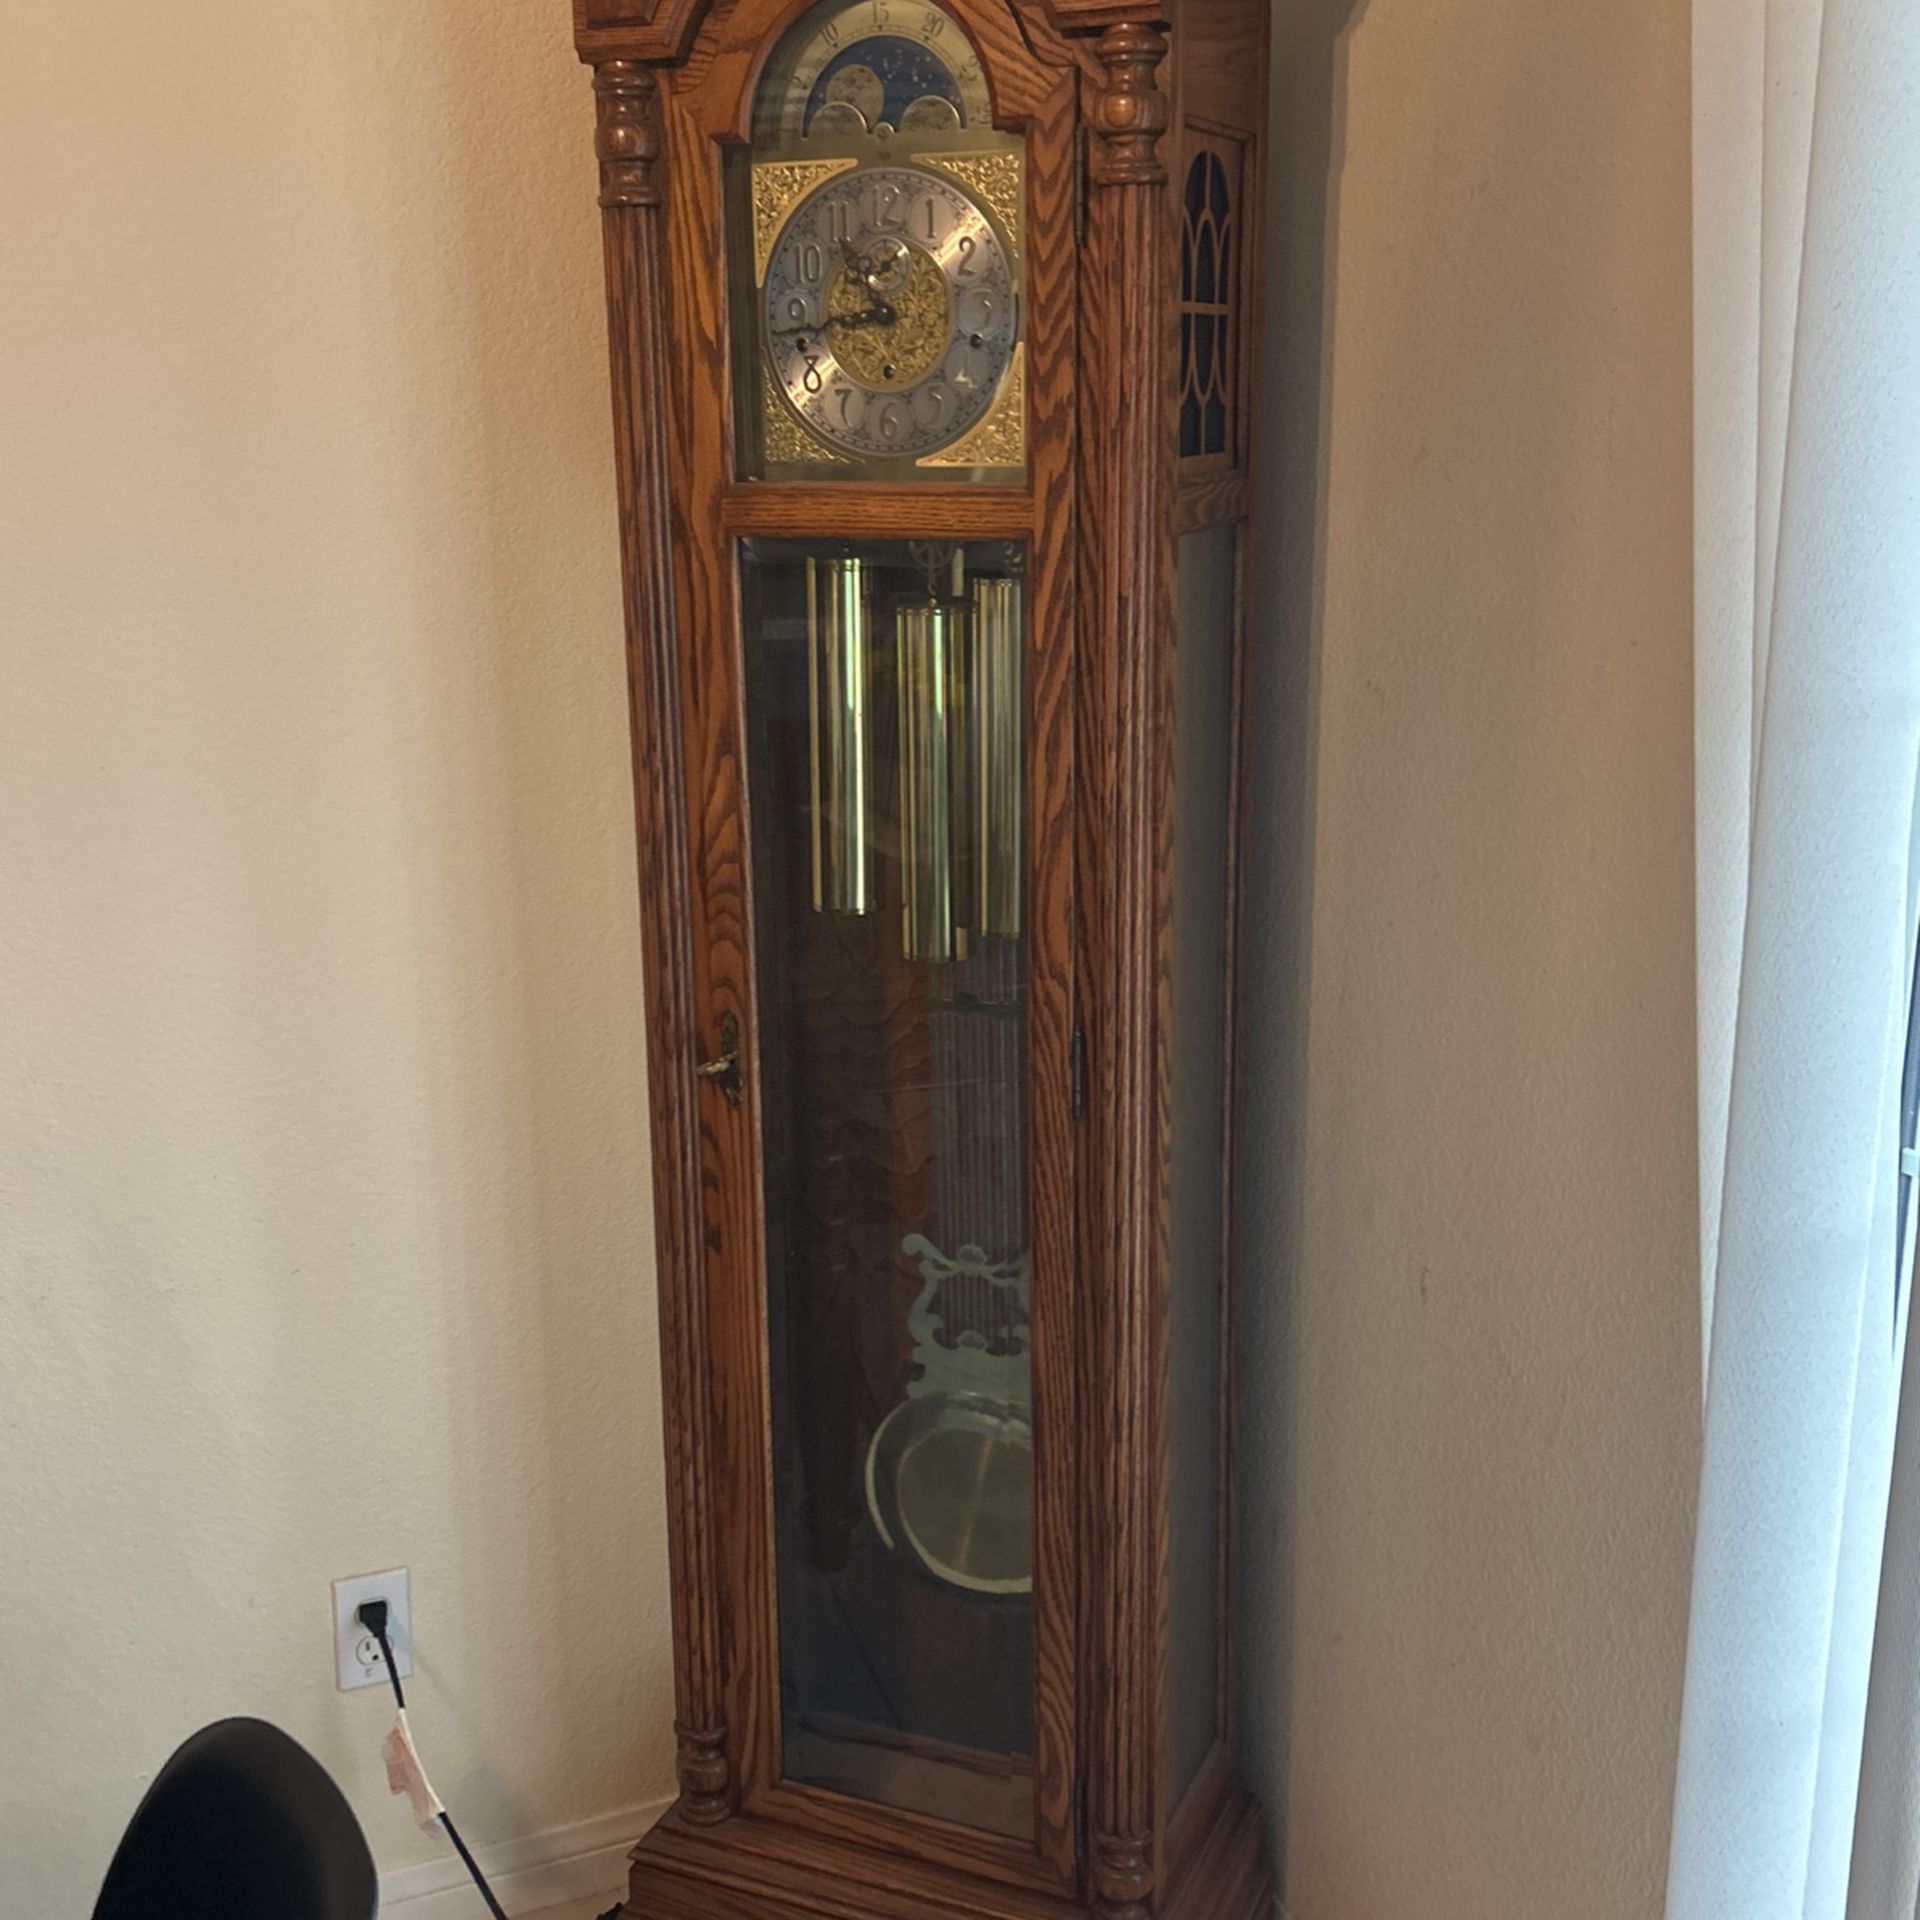 Sligh 78" Grandfather Clock